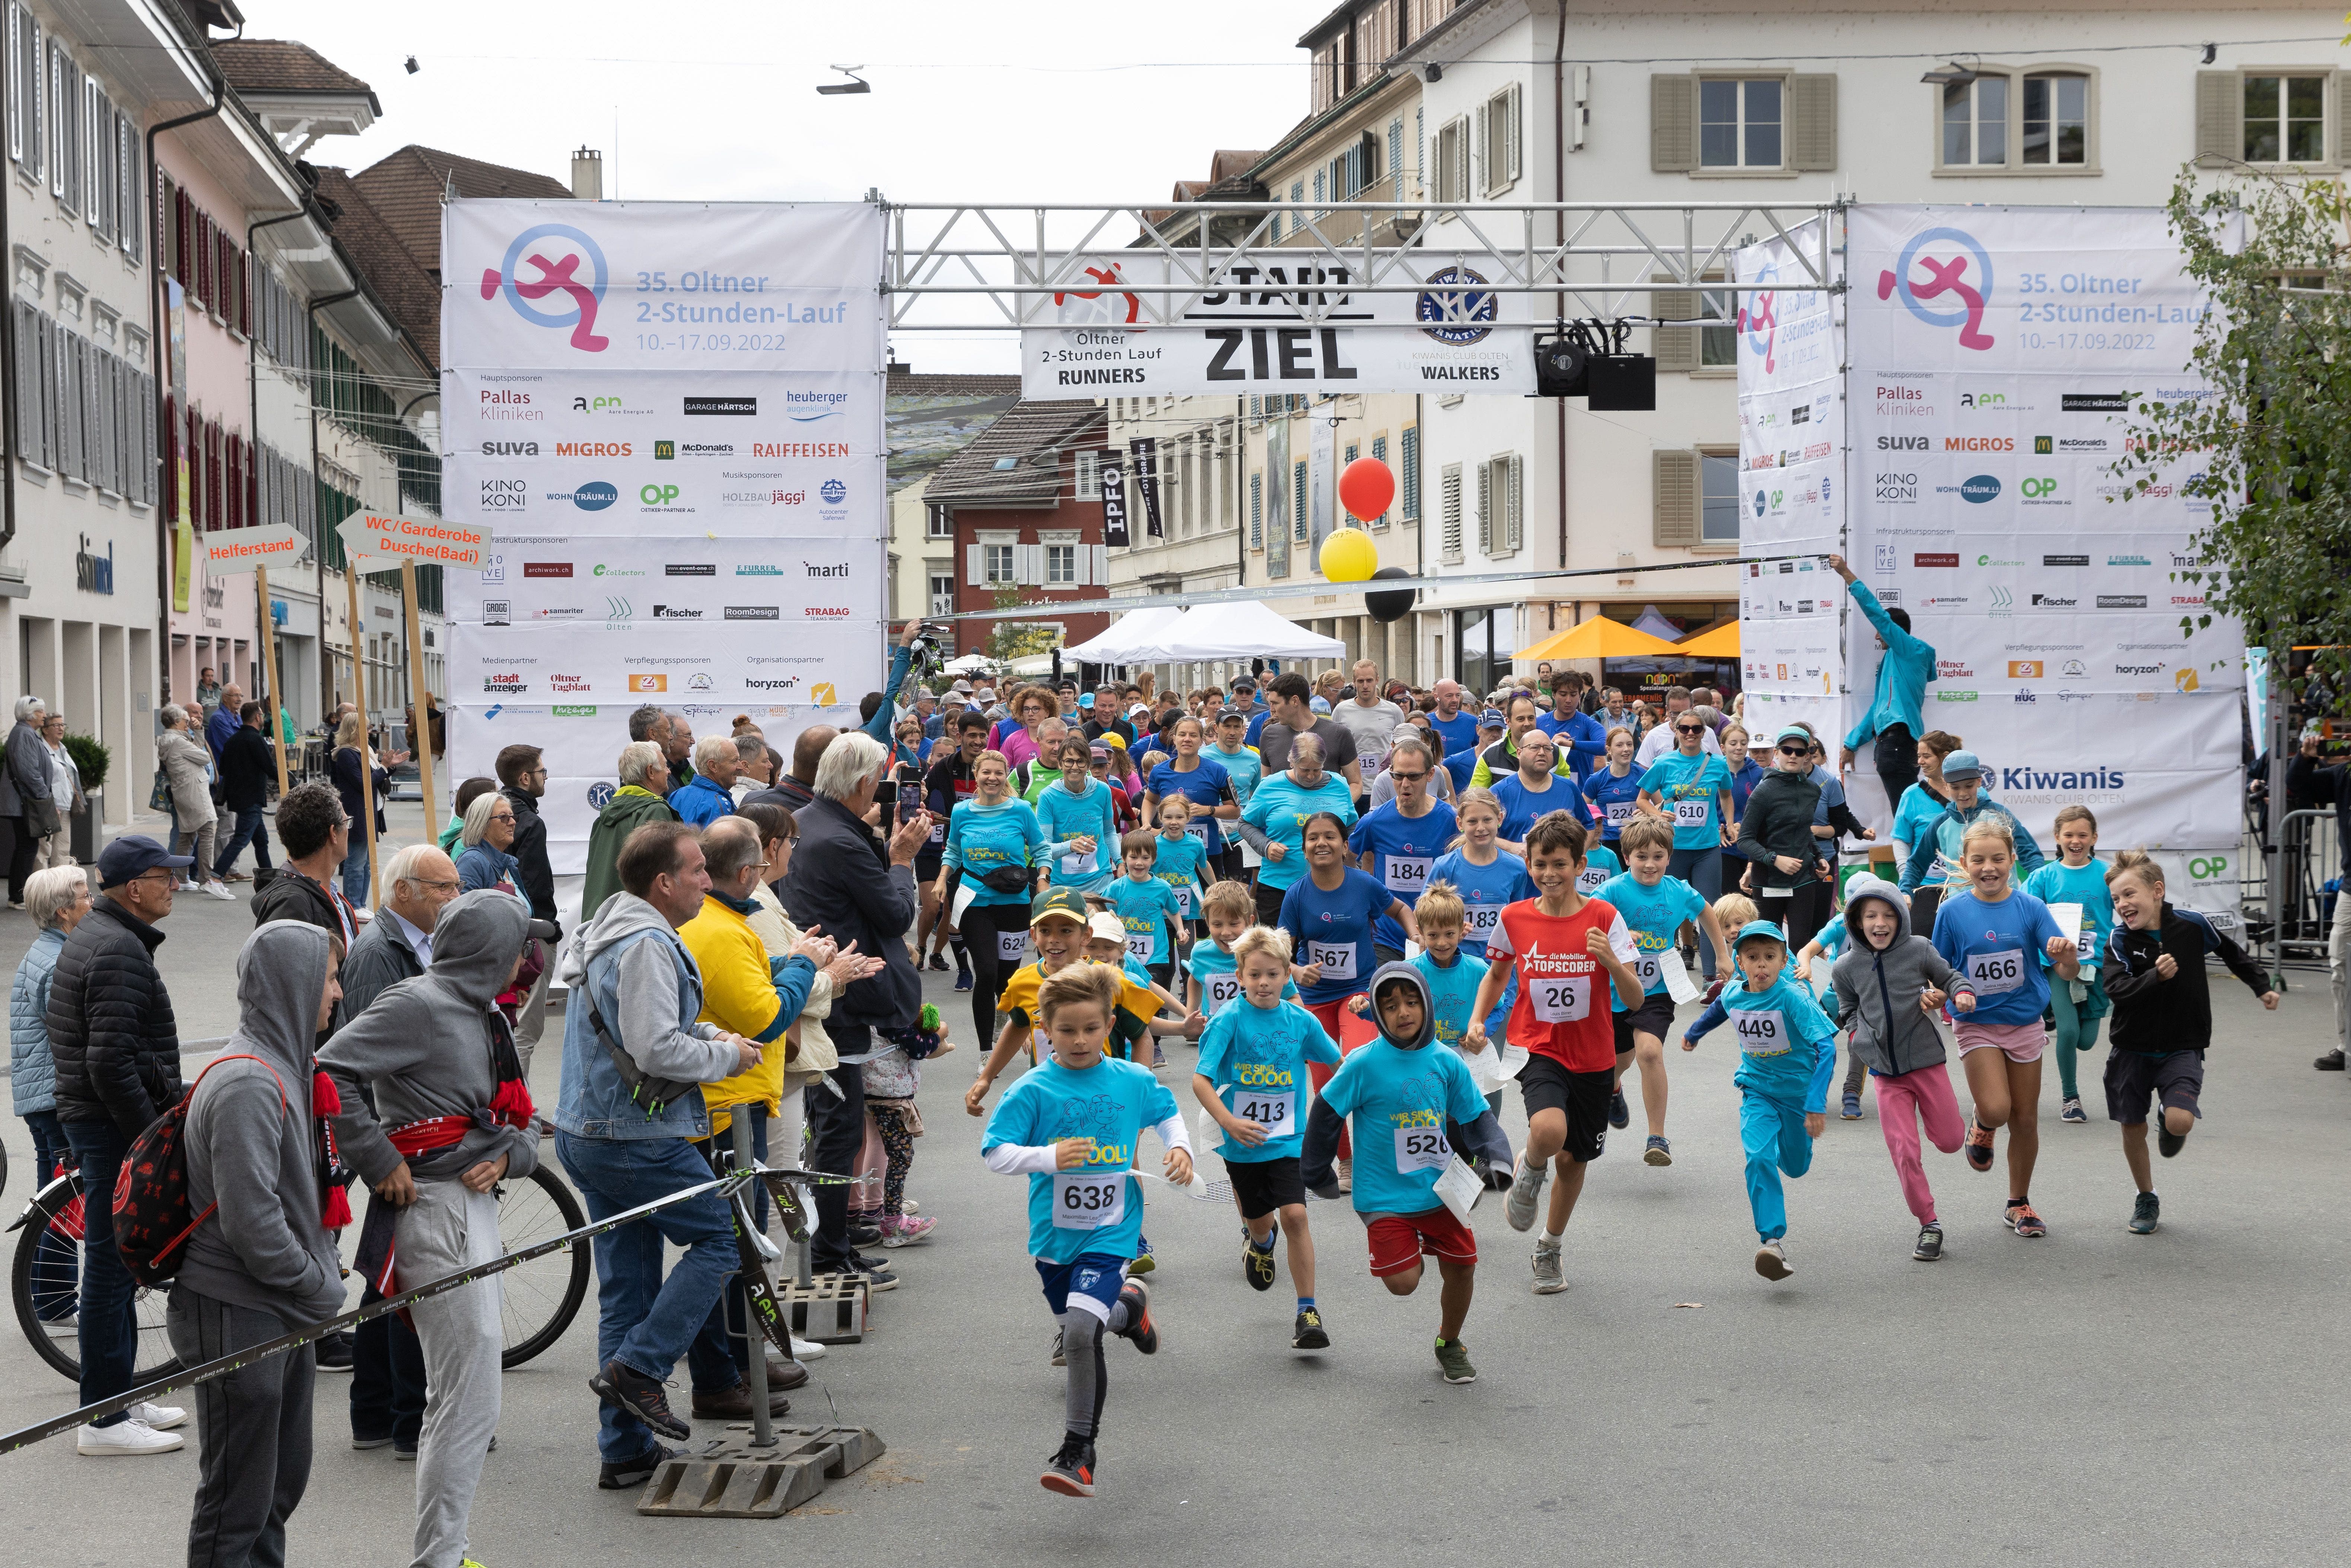 2-Stunden-Lauf am 17.09.2022 in Olten